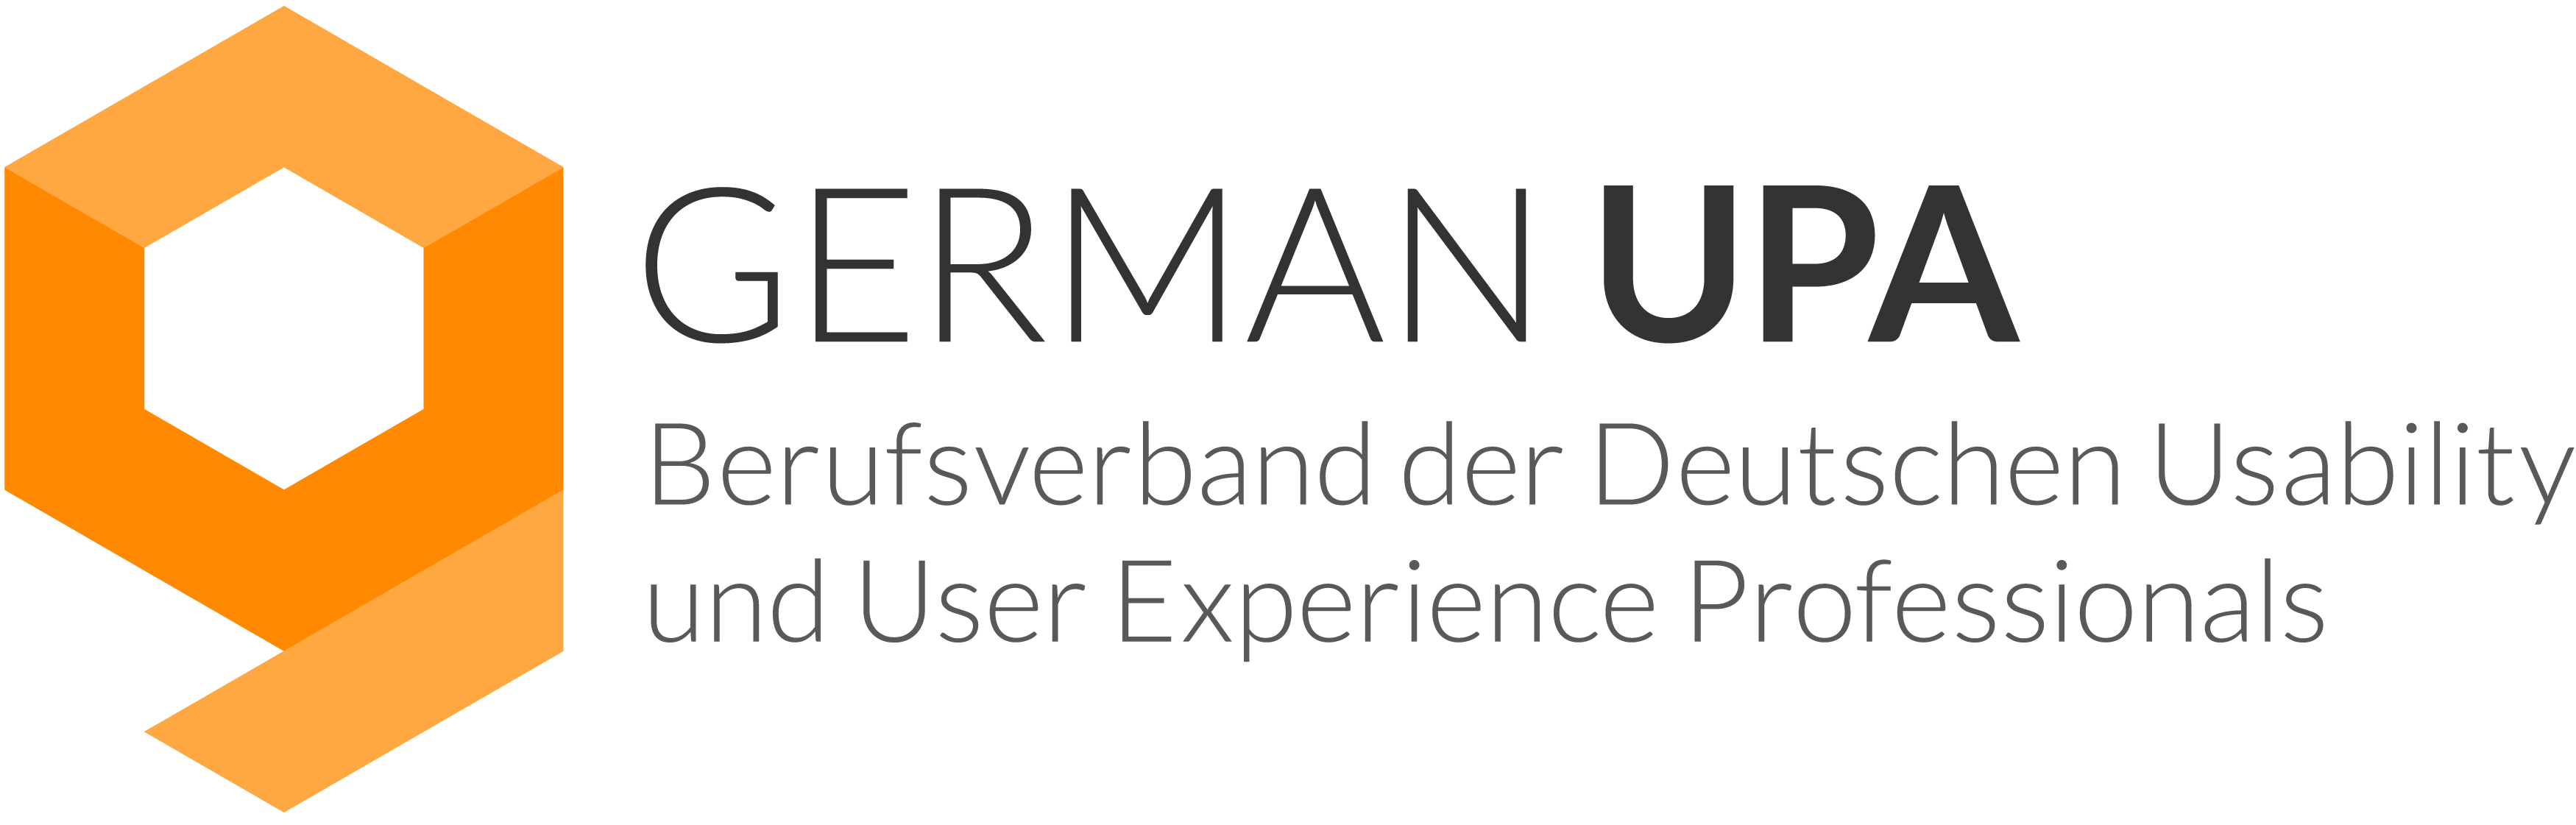 german upa logo